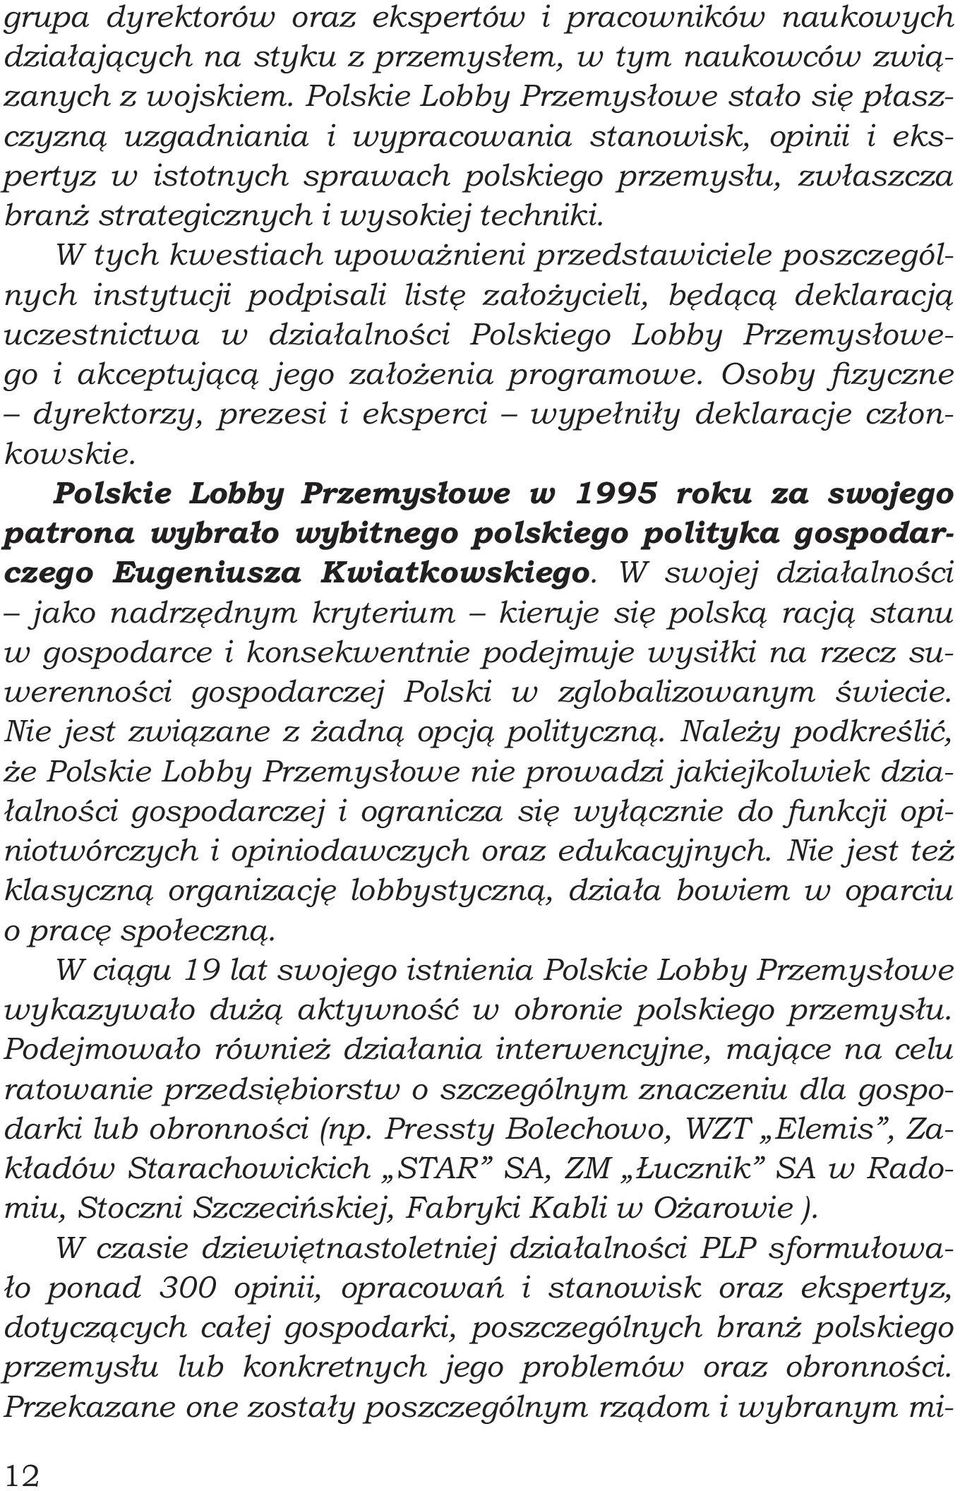 W tych kwestiach upoważnieni przedstawiciele poszczególnych instytucji podpisali listę założycieli, będącą deklaracją uczestnictwa w działalności Polskiego Lobby Przemysłowego i akceptującą jego